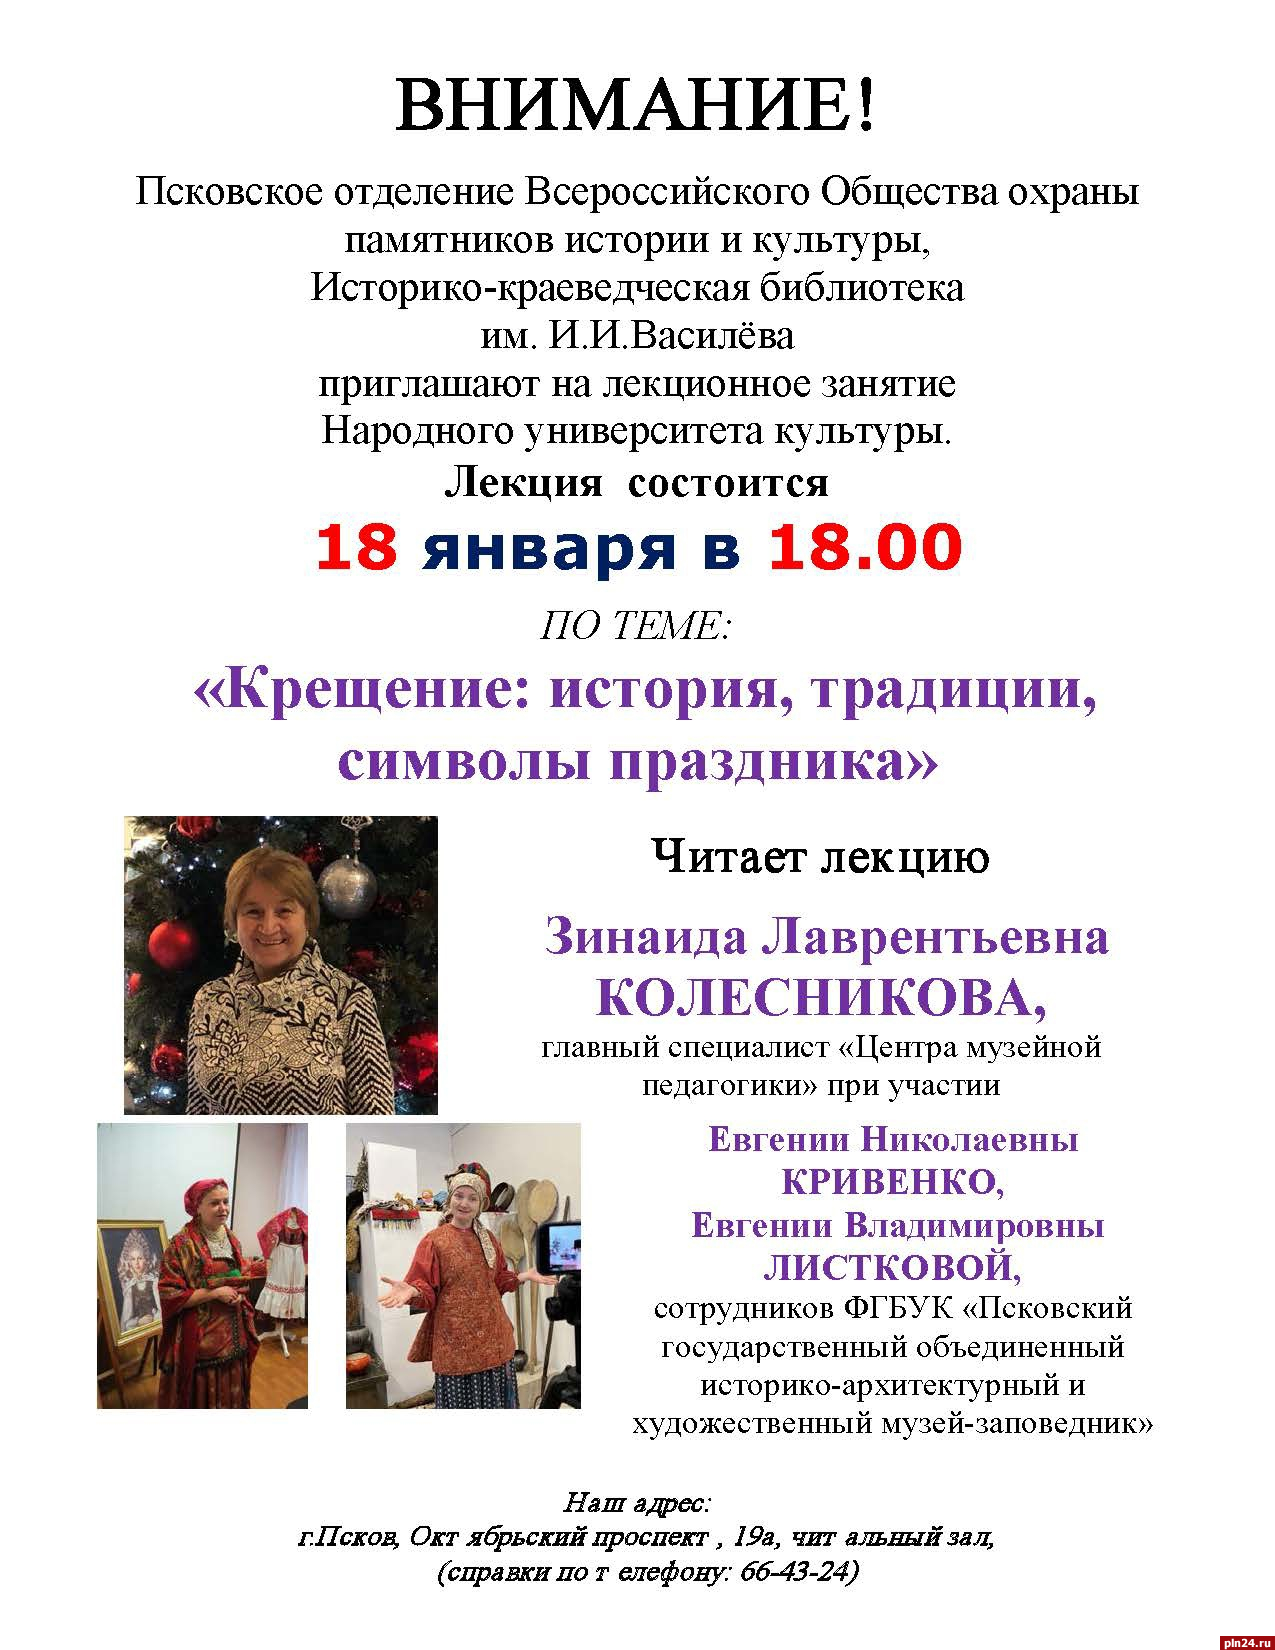 Лекция о крещенских традициях пройдёт в Пскове